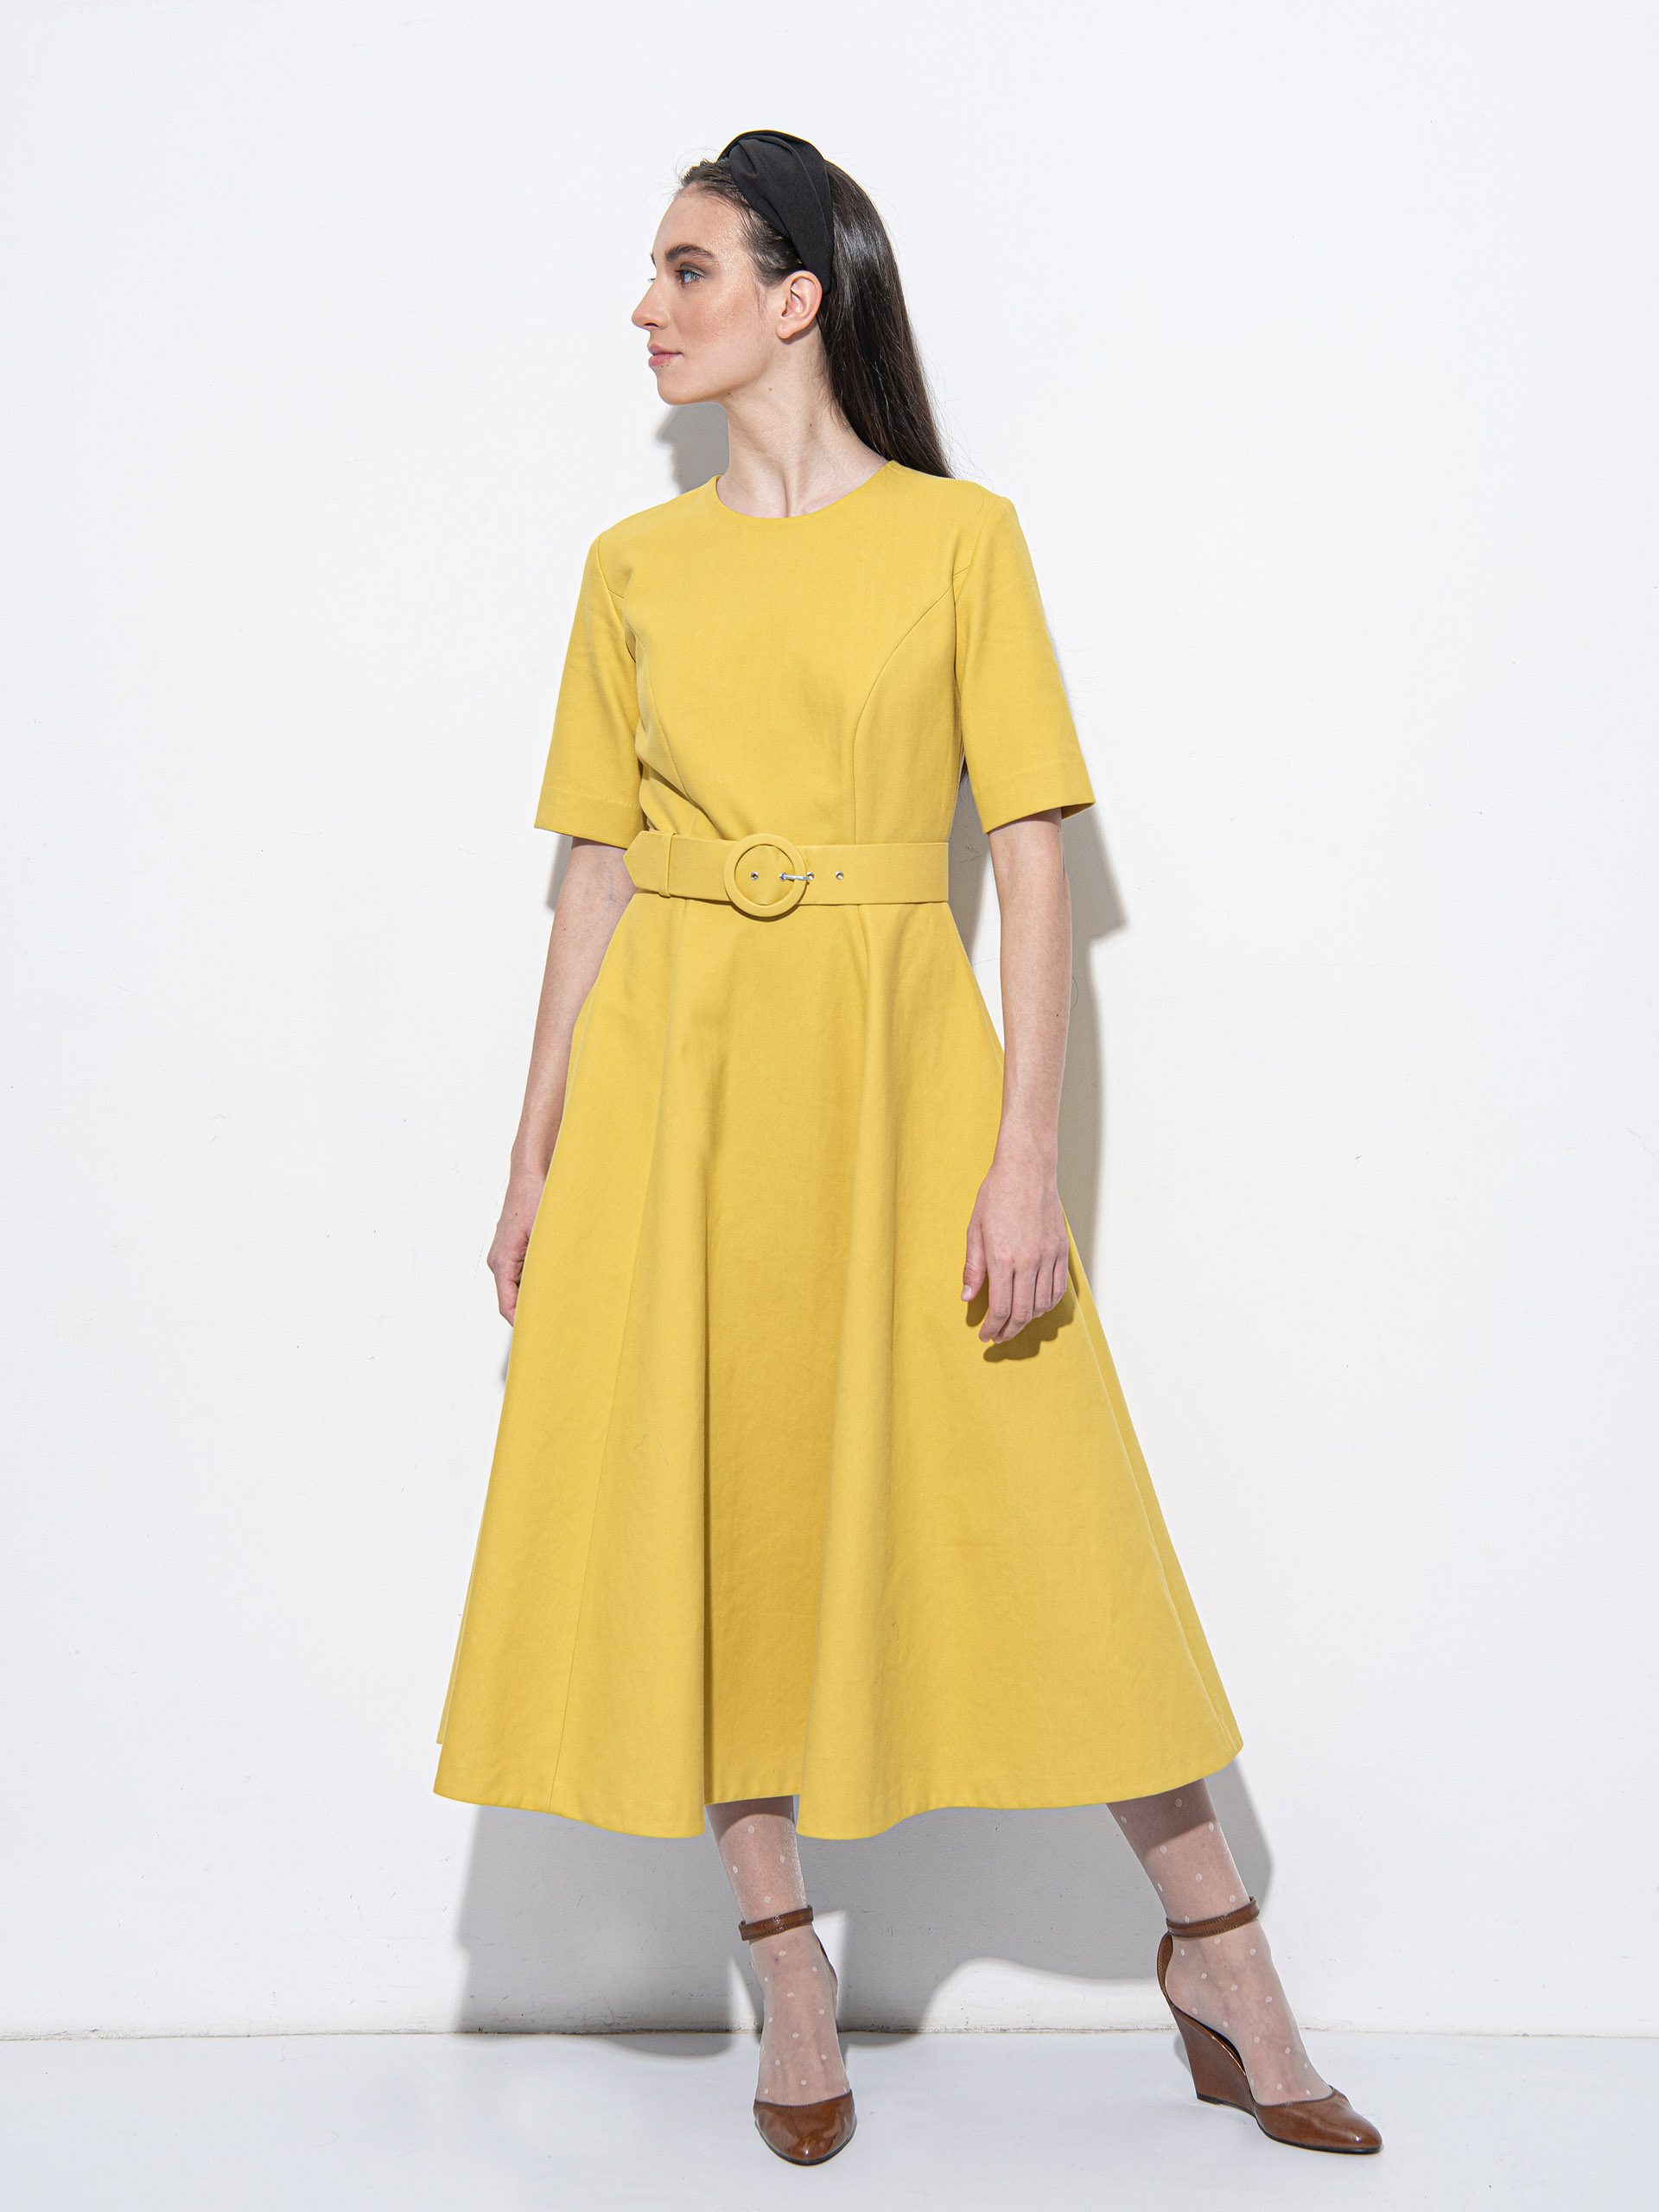 Mustard yellow dress with a belt • Sassa Björg